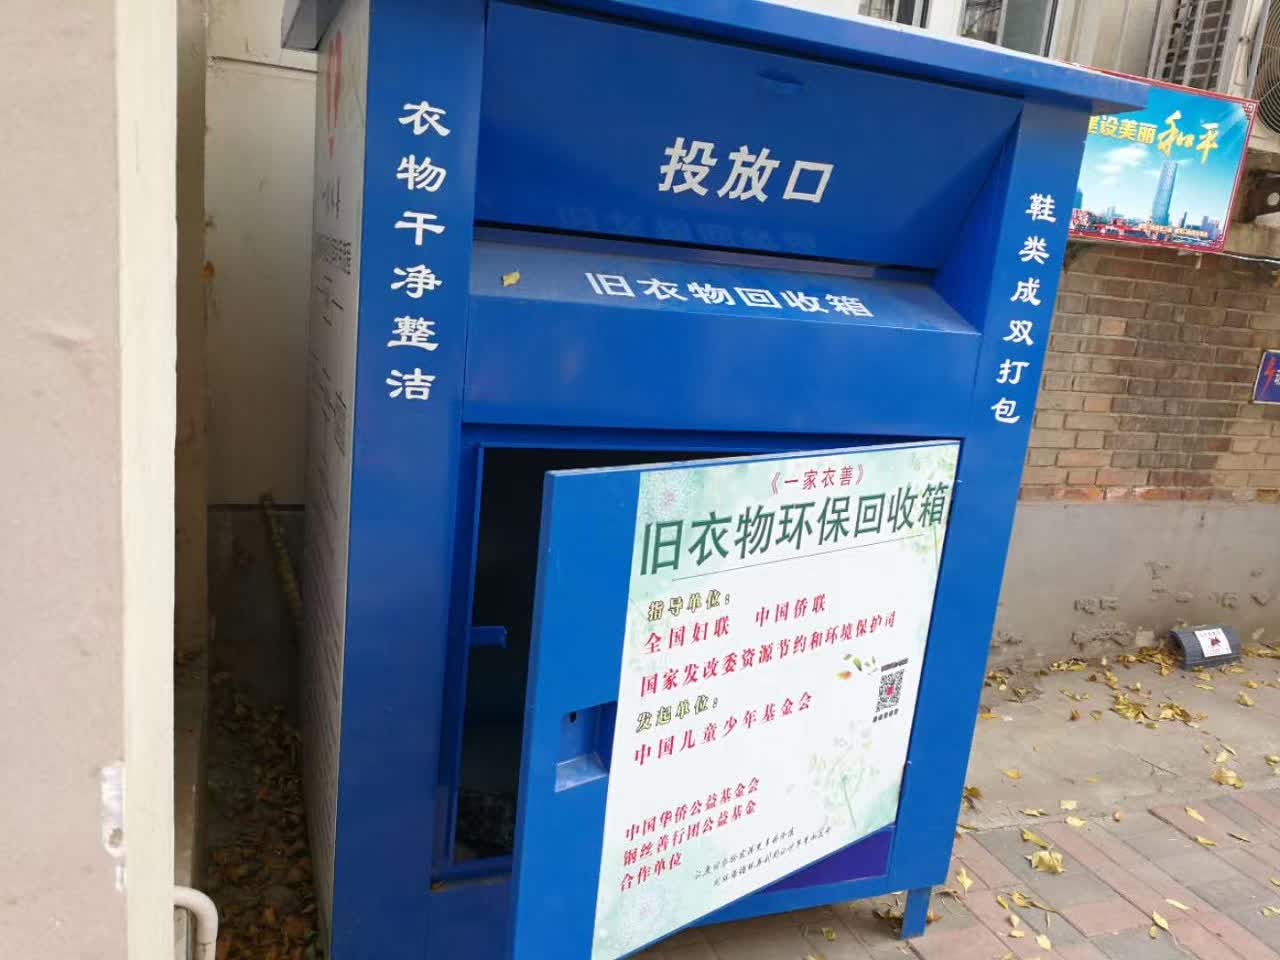 天津一些居民小区的旧衣物回收箱有的箱门被破